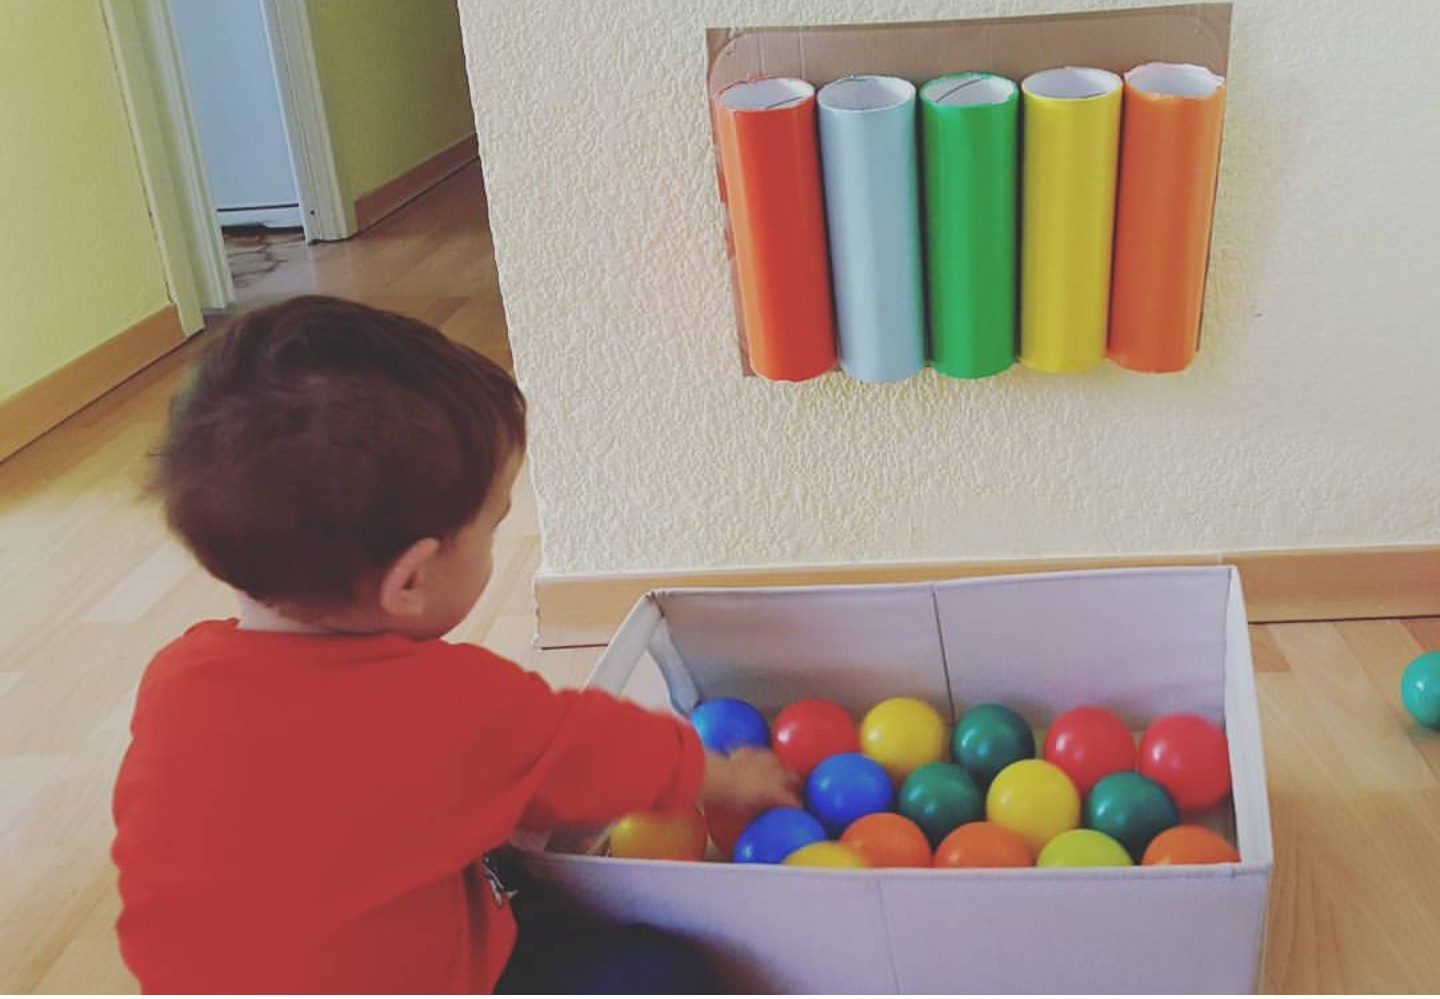 capoc Literatura bicapa Juegos para niños de 2 años ¡Divertidos y estimulantes!